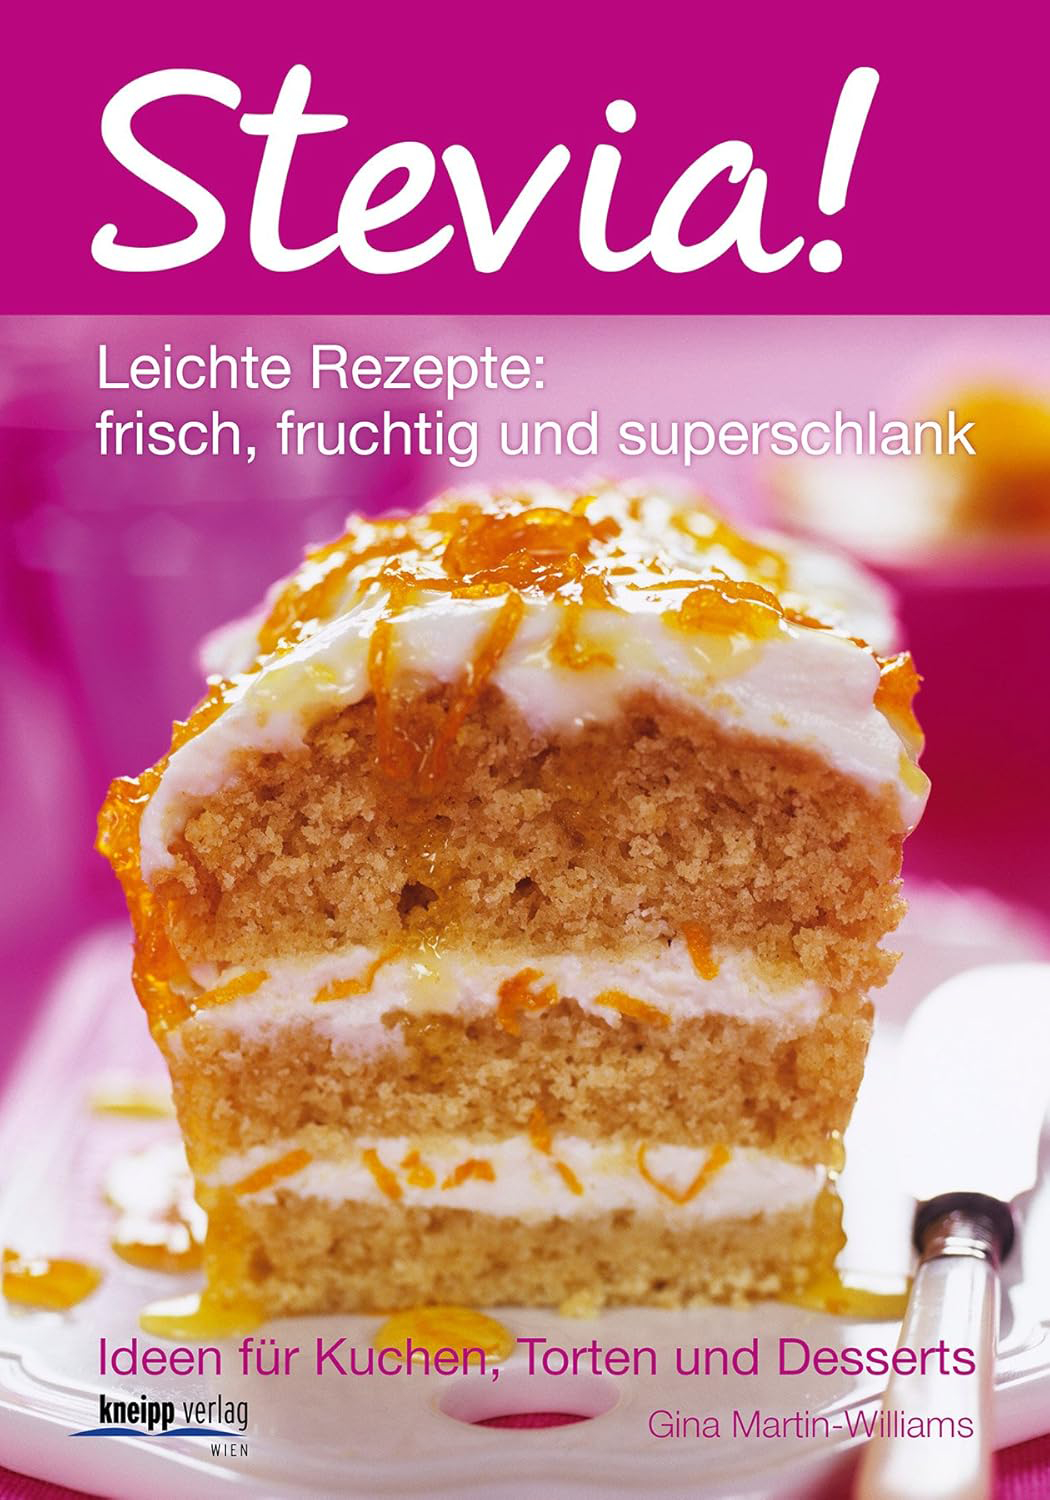 Stevia Leichte Rezepte frisch fruchtig und superschlank Ideen für Kuchen Torten und Desserts